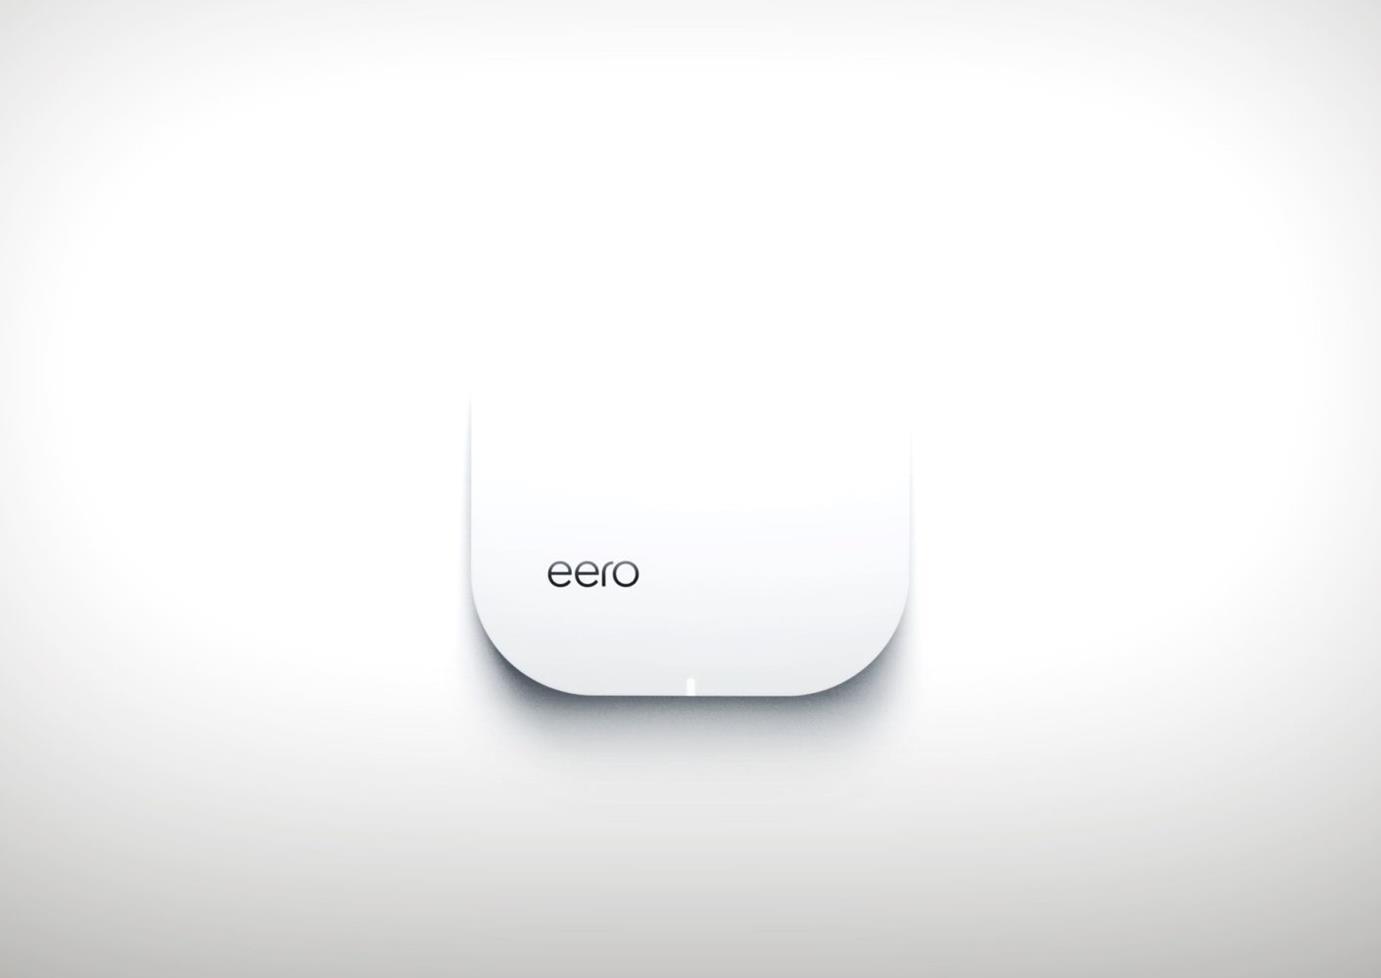 Eero va bientot mettre a niveau les routeurs WiFi equipes de la TS4dK 1 1